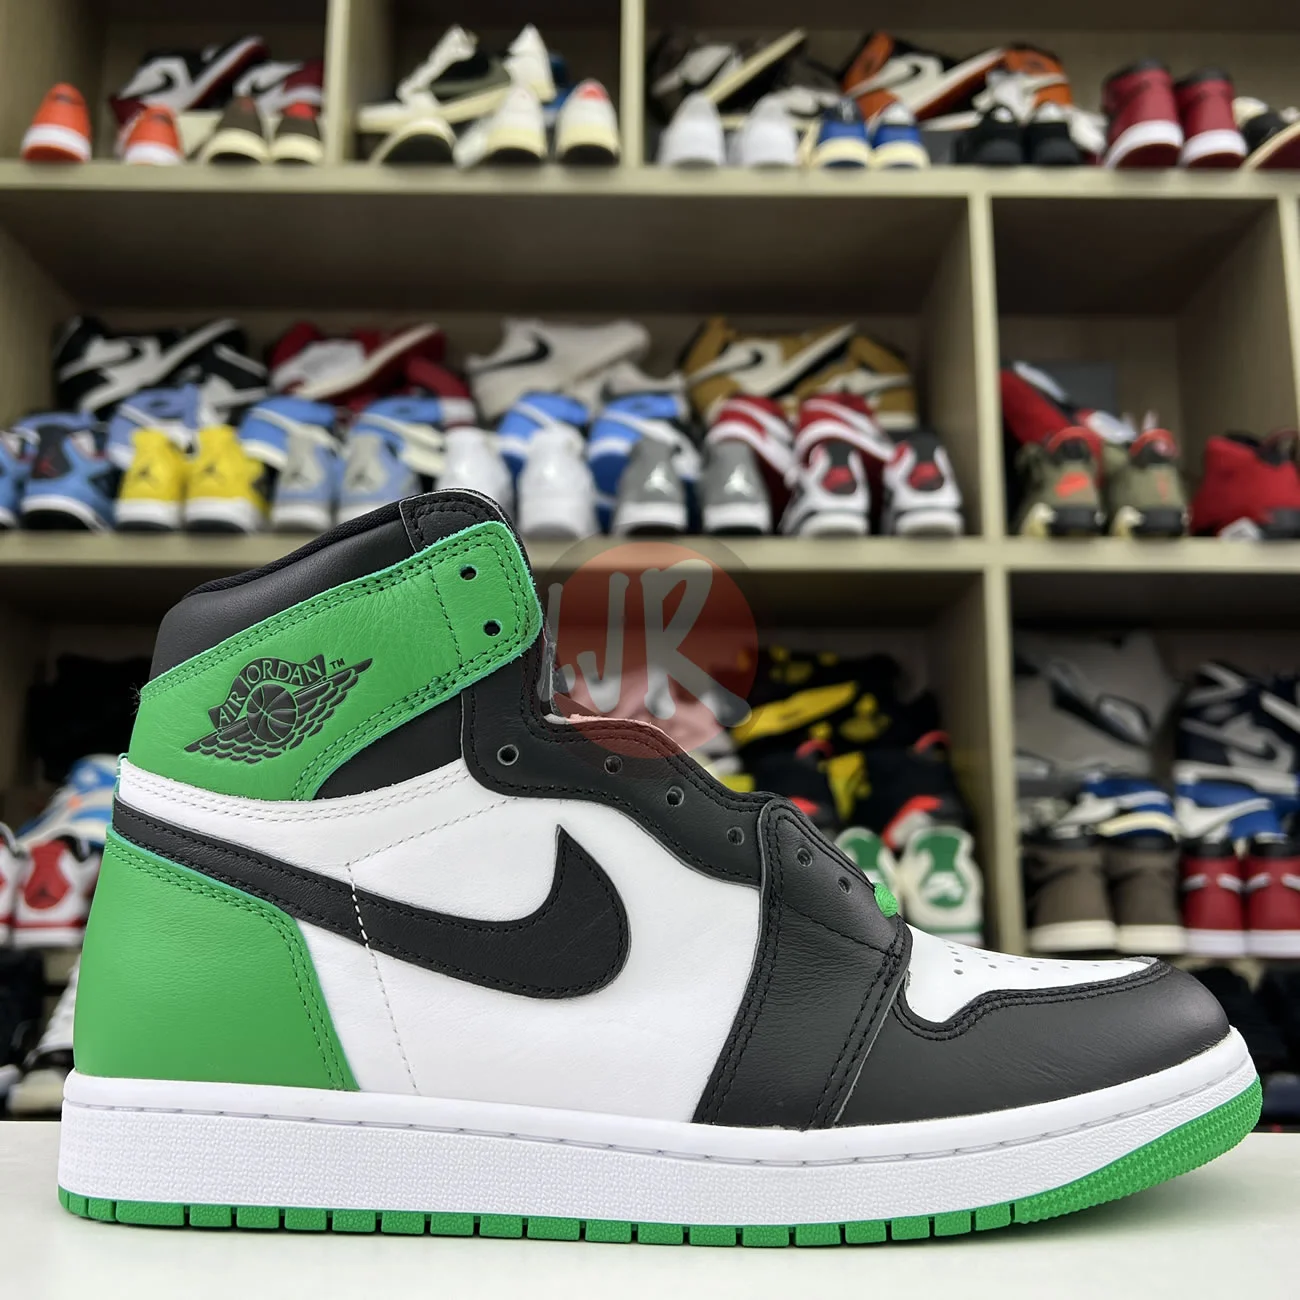 Air Jordan 1 Retro High Og Lucky Green Dz5485 031 Ljr Sneakers (12) - bc-ljr.net